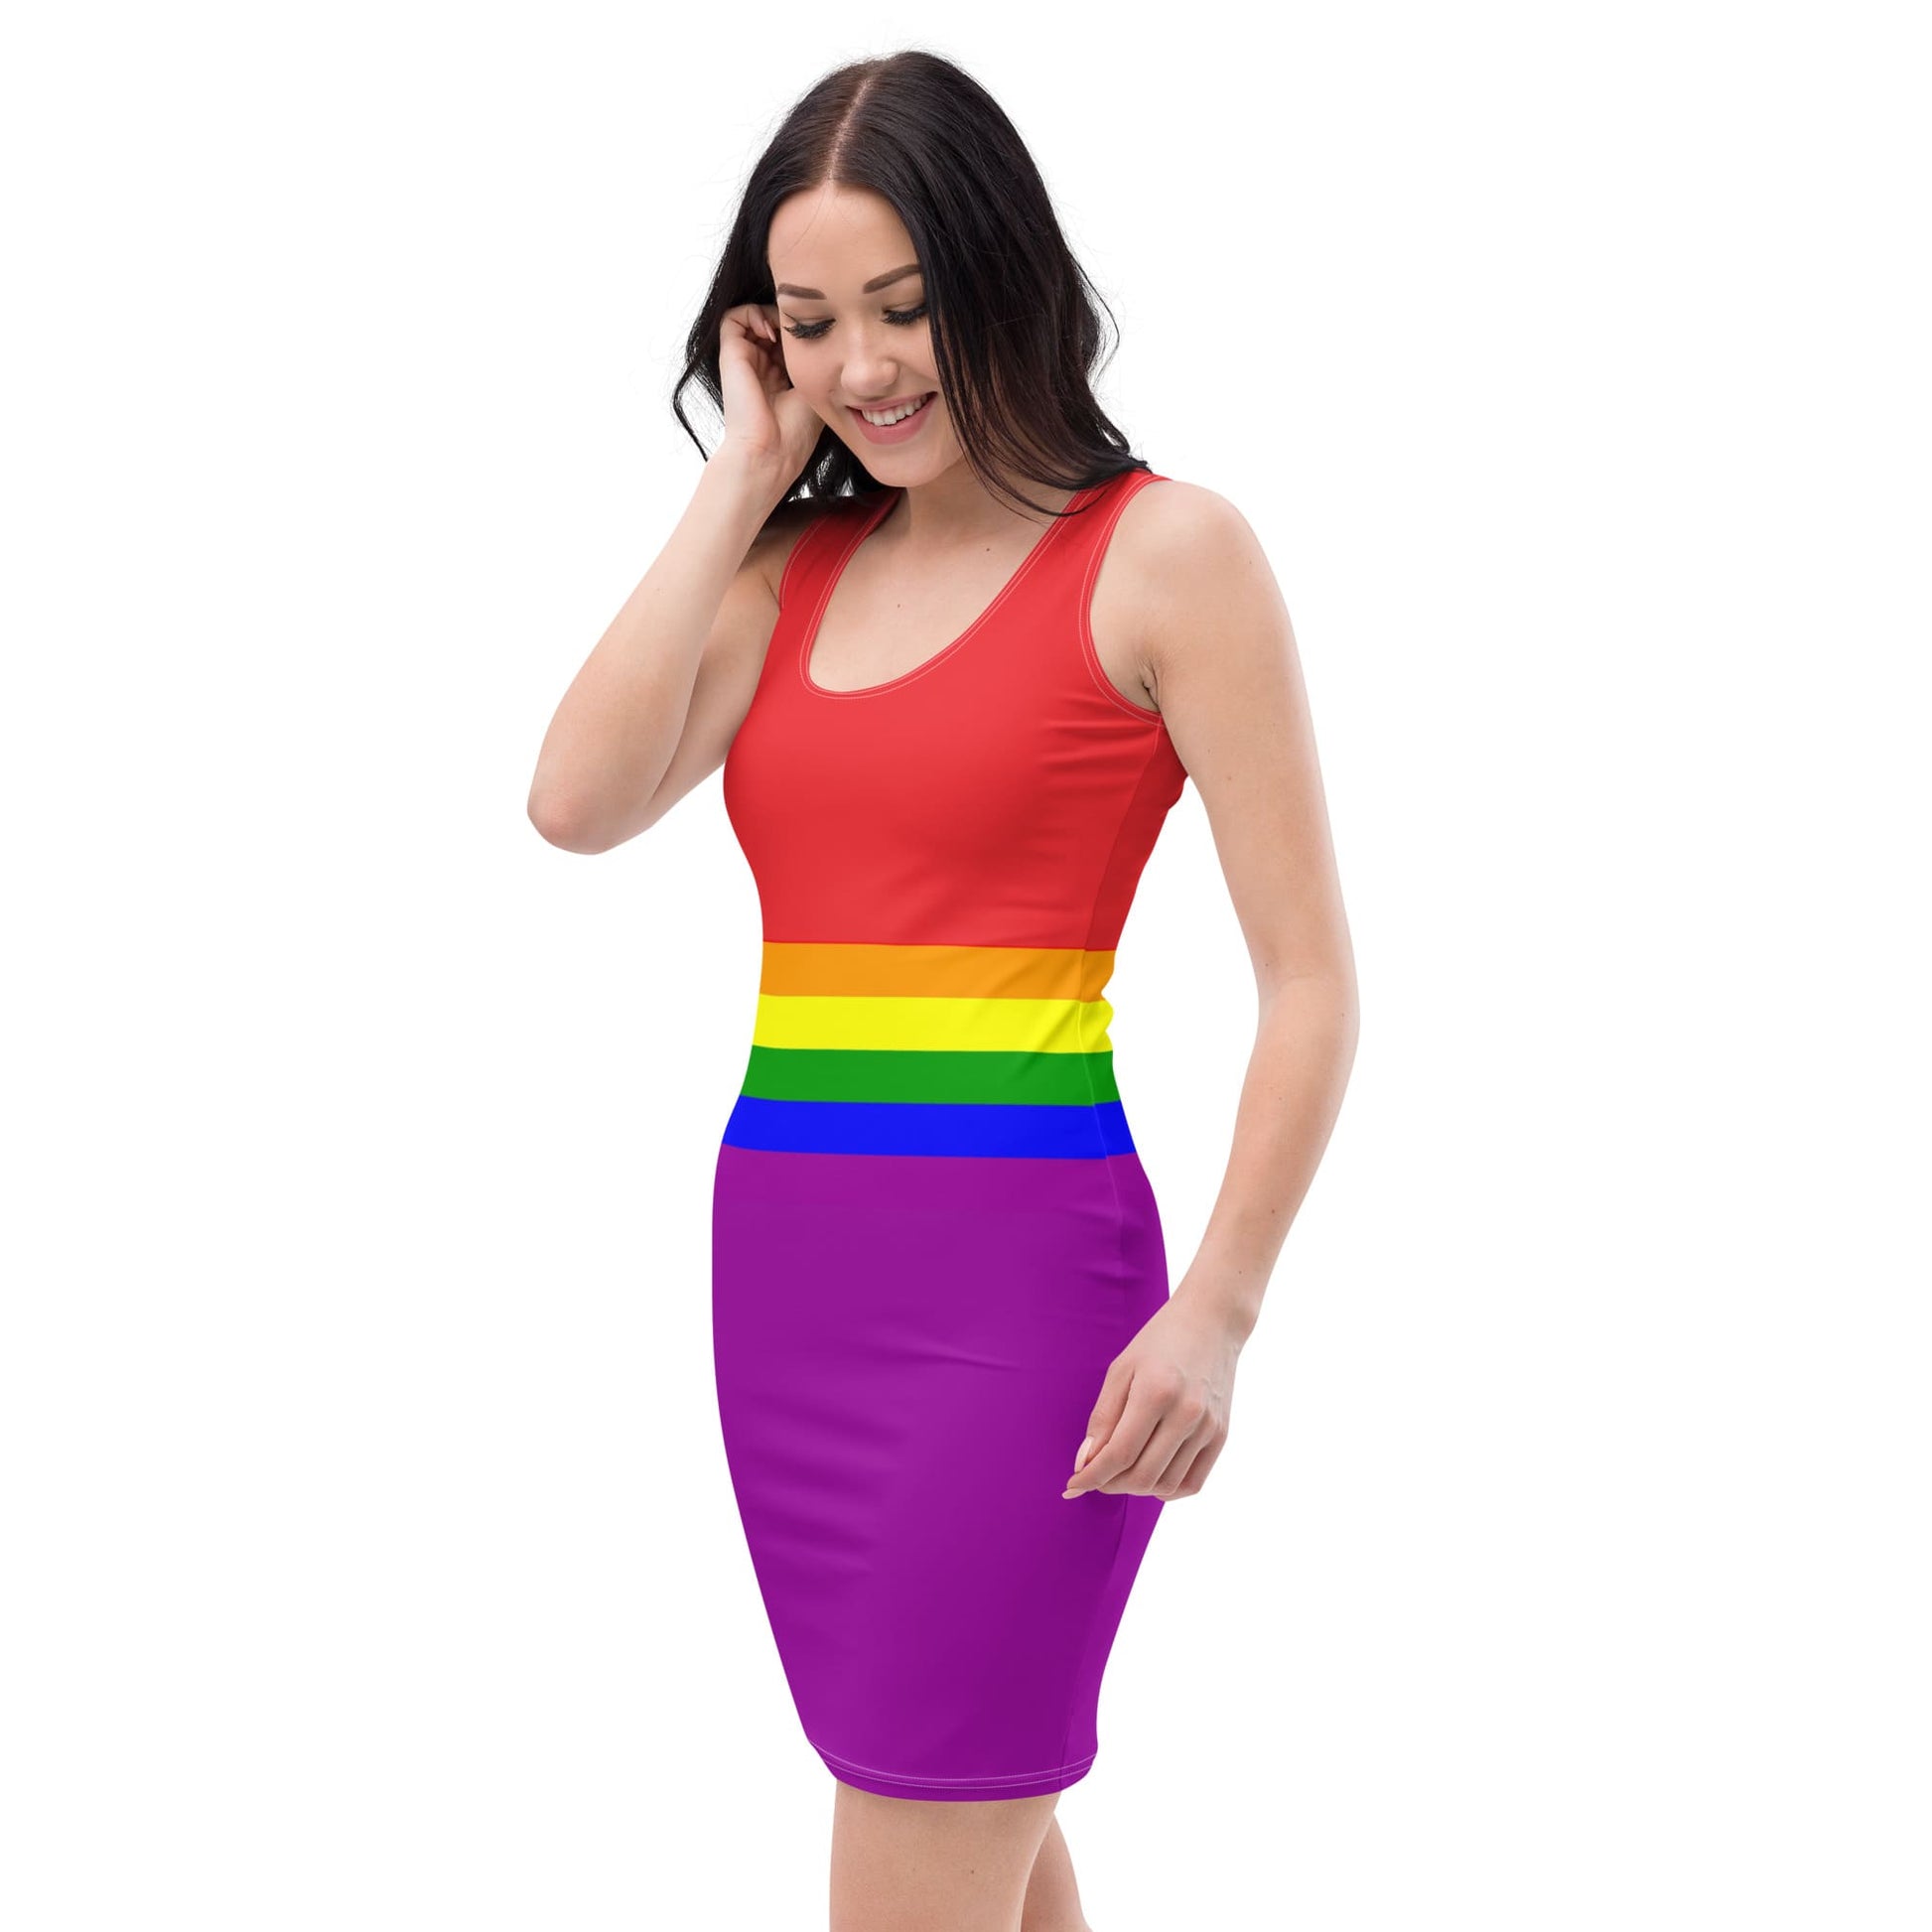 LGBT pride dress, left